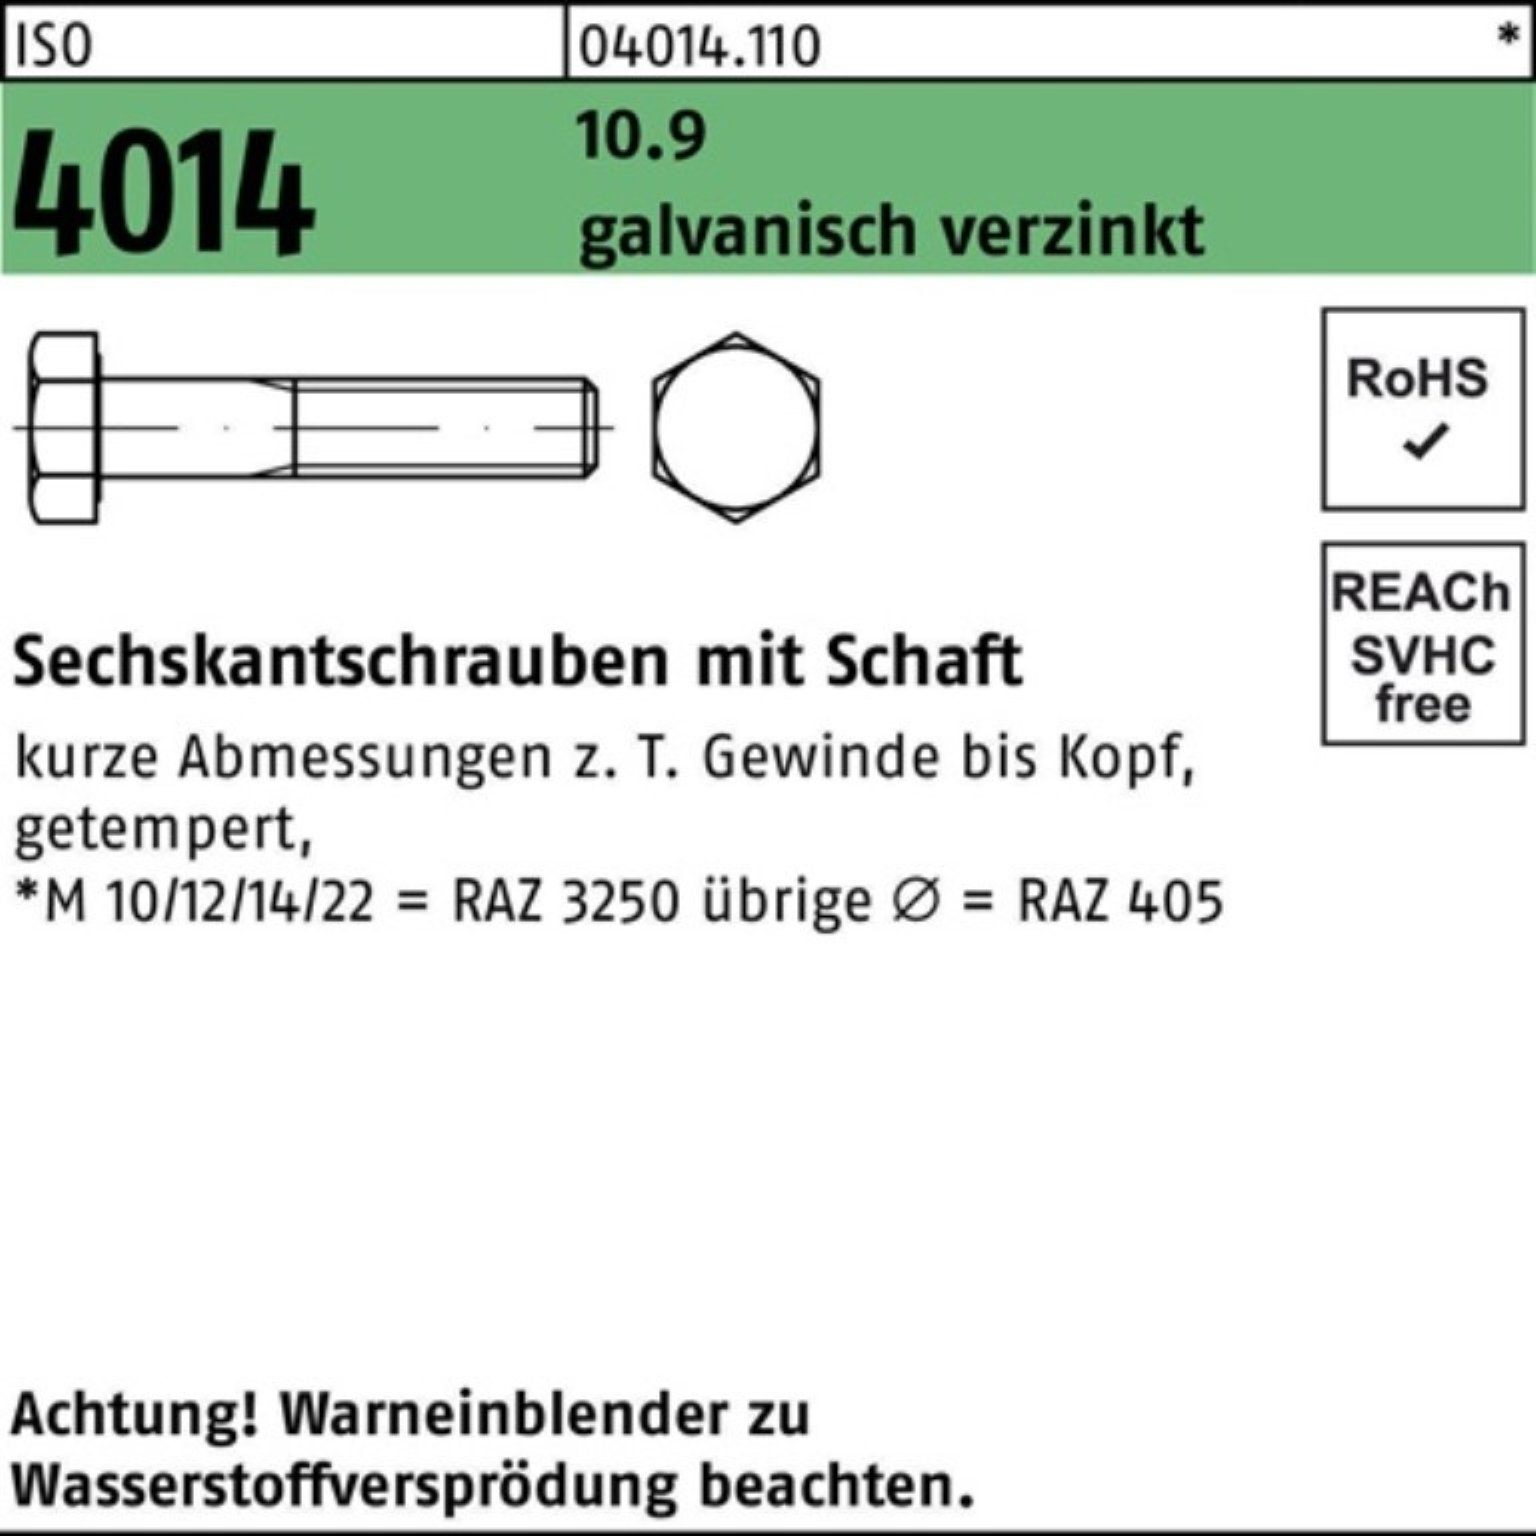 Schaft Sechskantschraube 10.9 5 70 4014 100er ISO Pack Bufab Sechskantschraube galv.verz. M12x